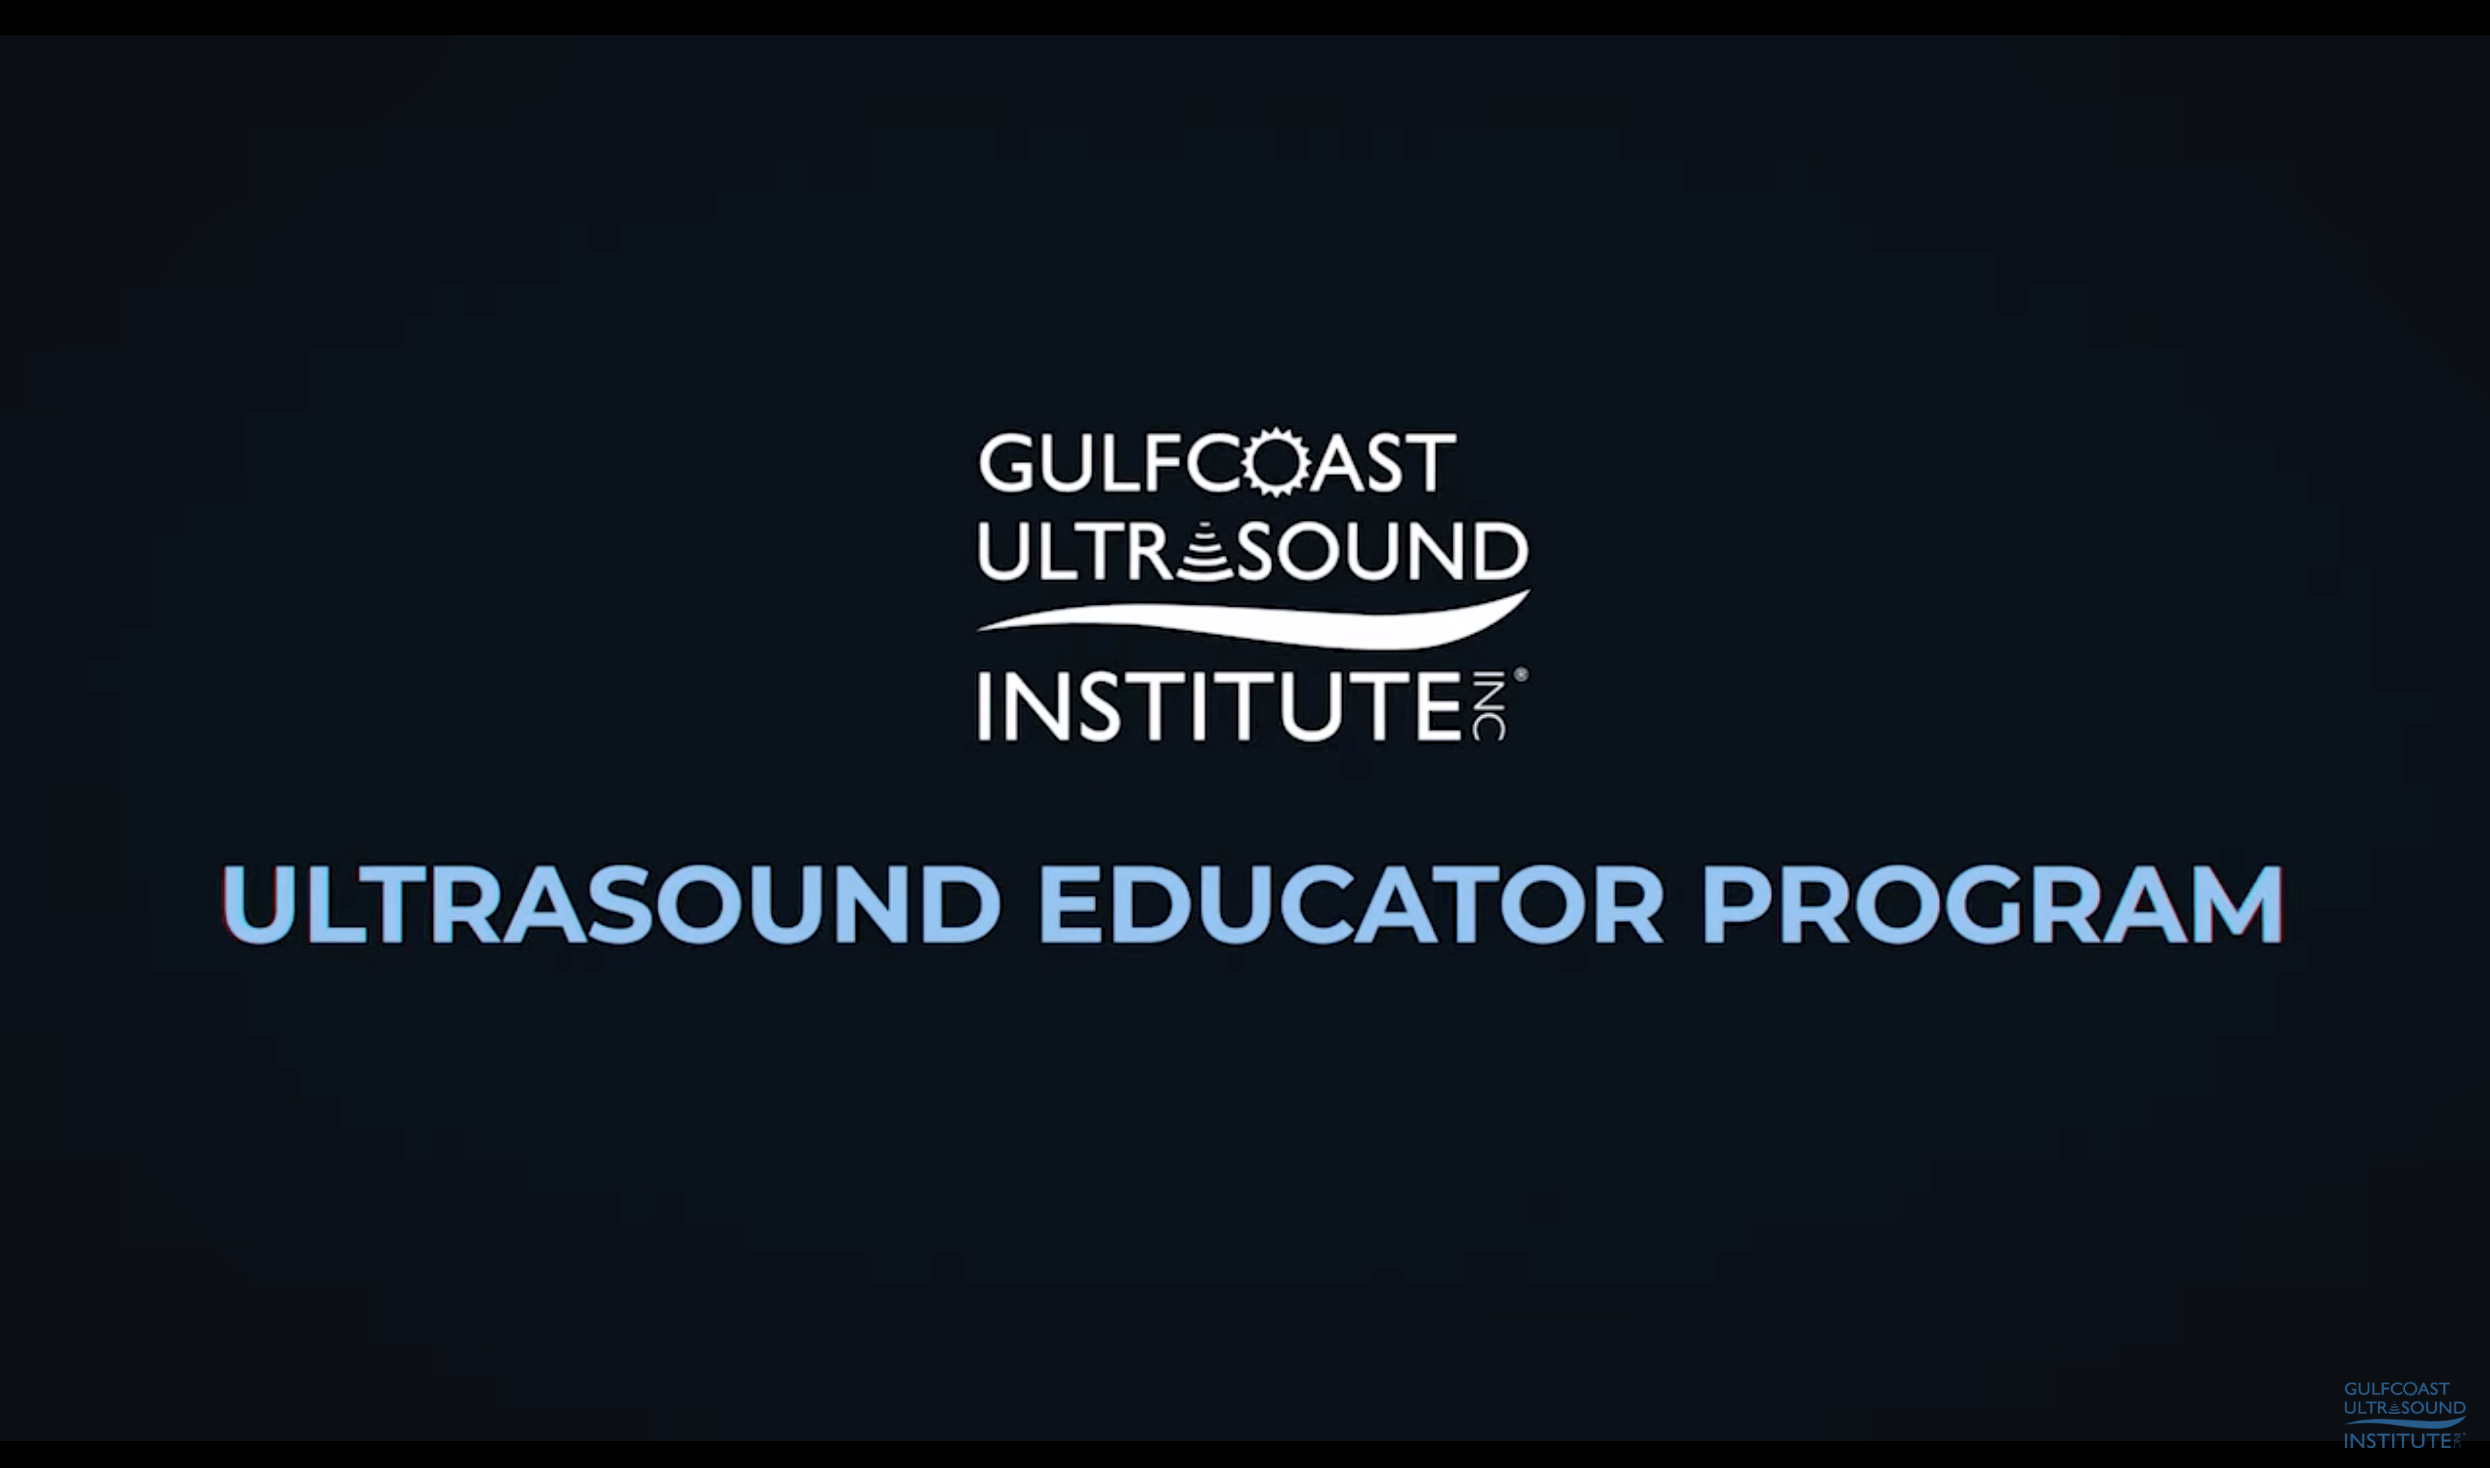 Ultrasound Educator Program from Gulfcoast Ultrasound